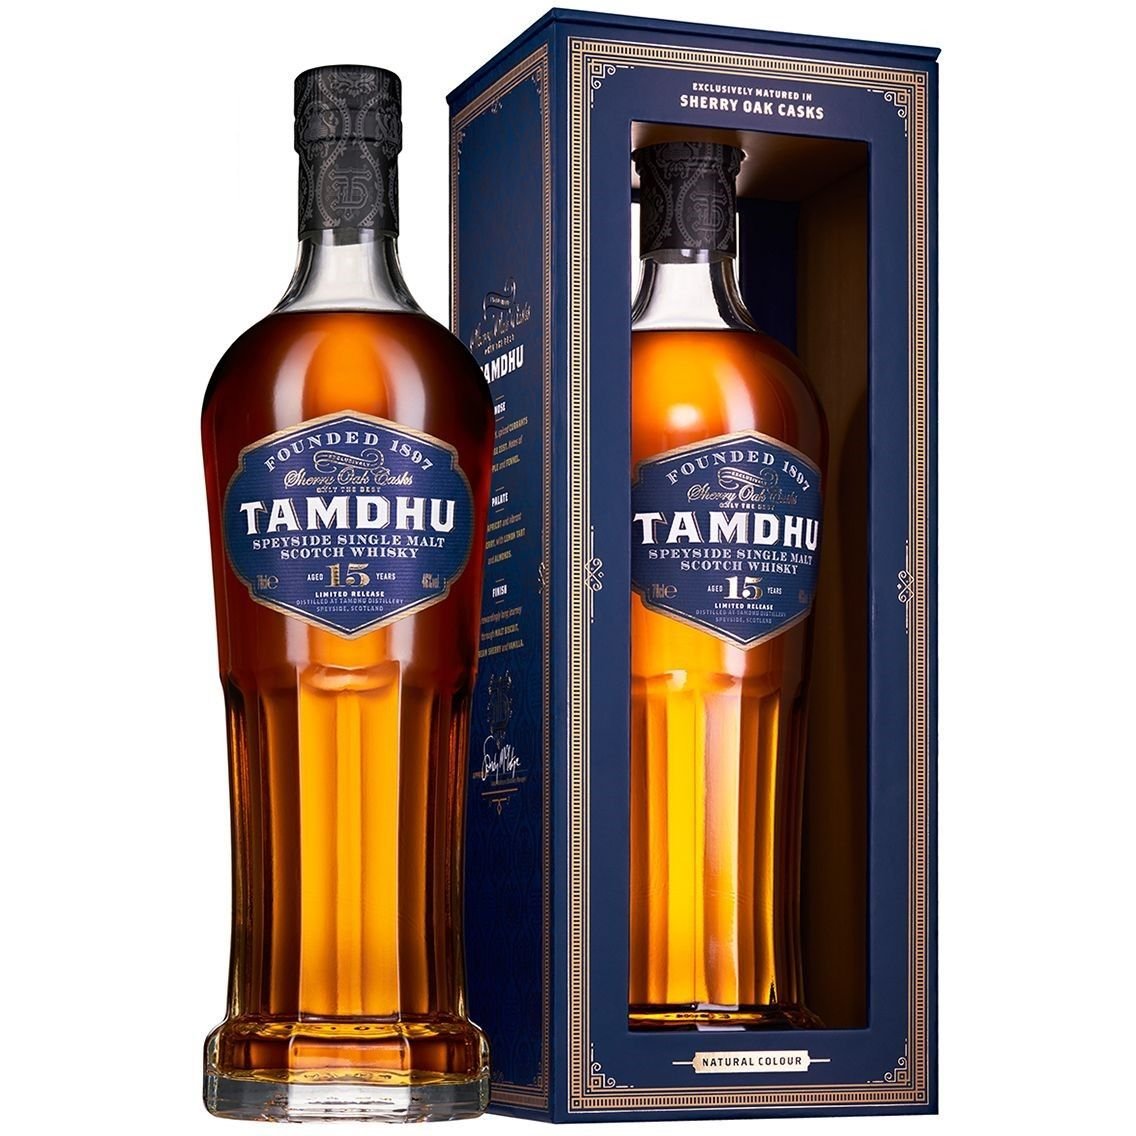 Віскі Tamdhu 15 yo Single Malt Scotch Whisky 46% 0.7 л, в подарунковій упаковці - фото 1